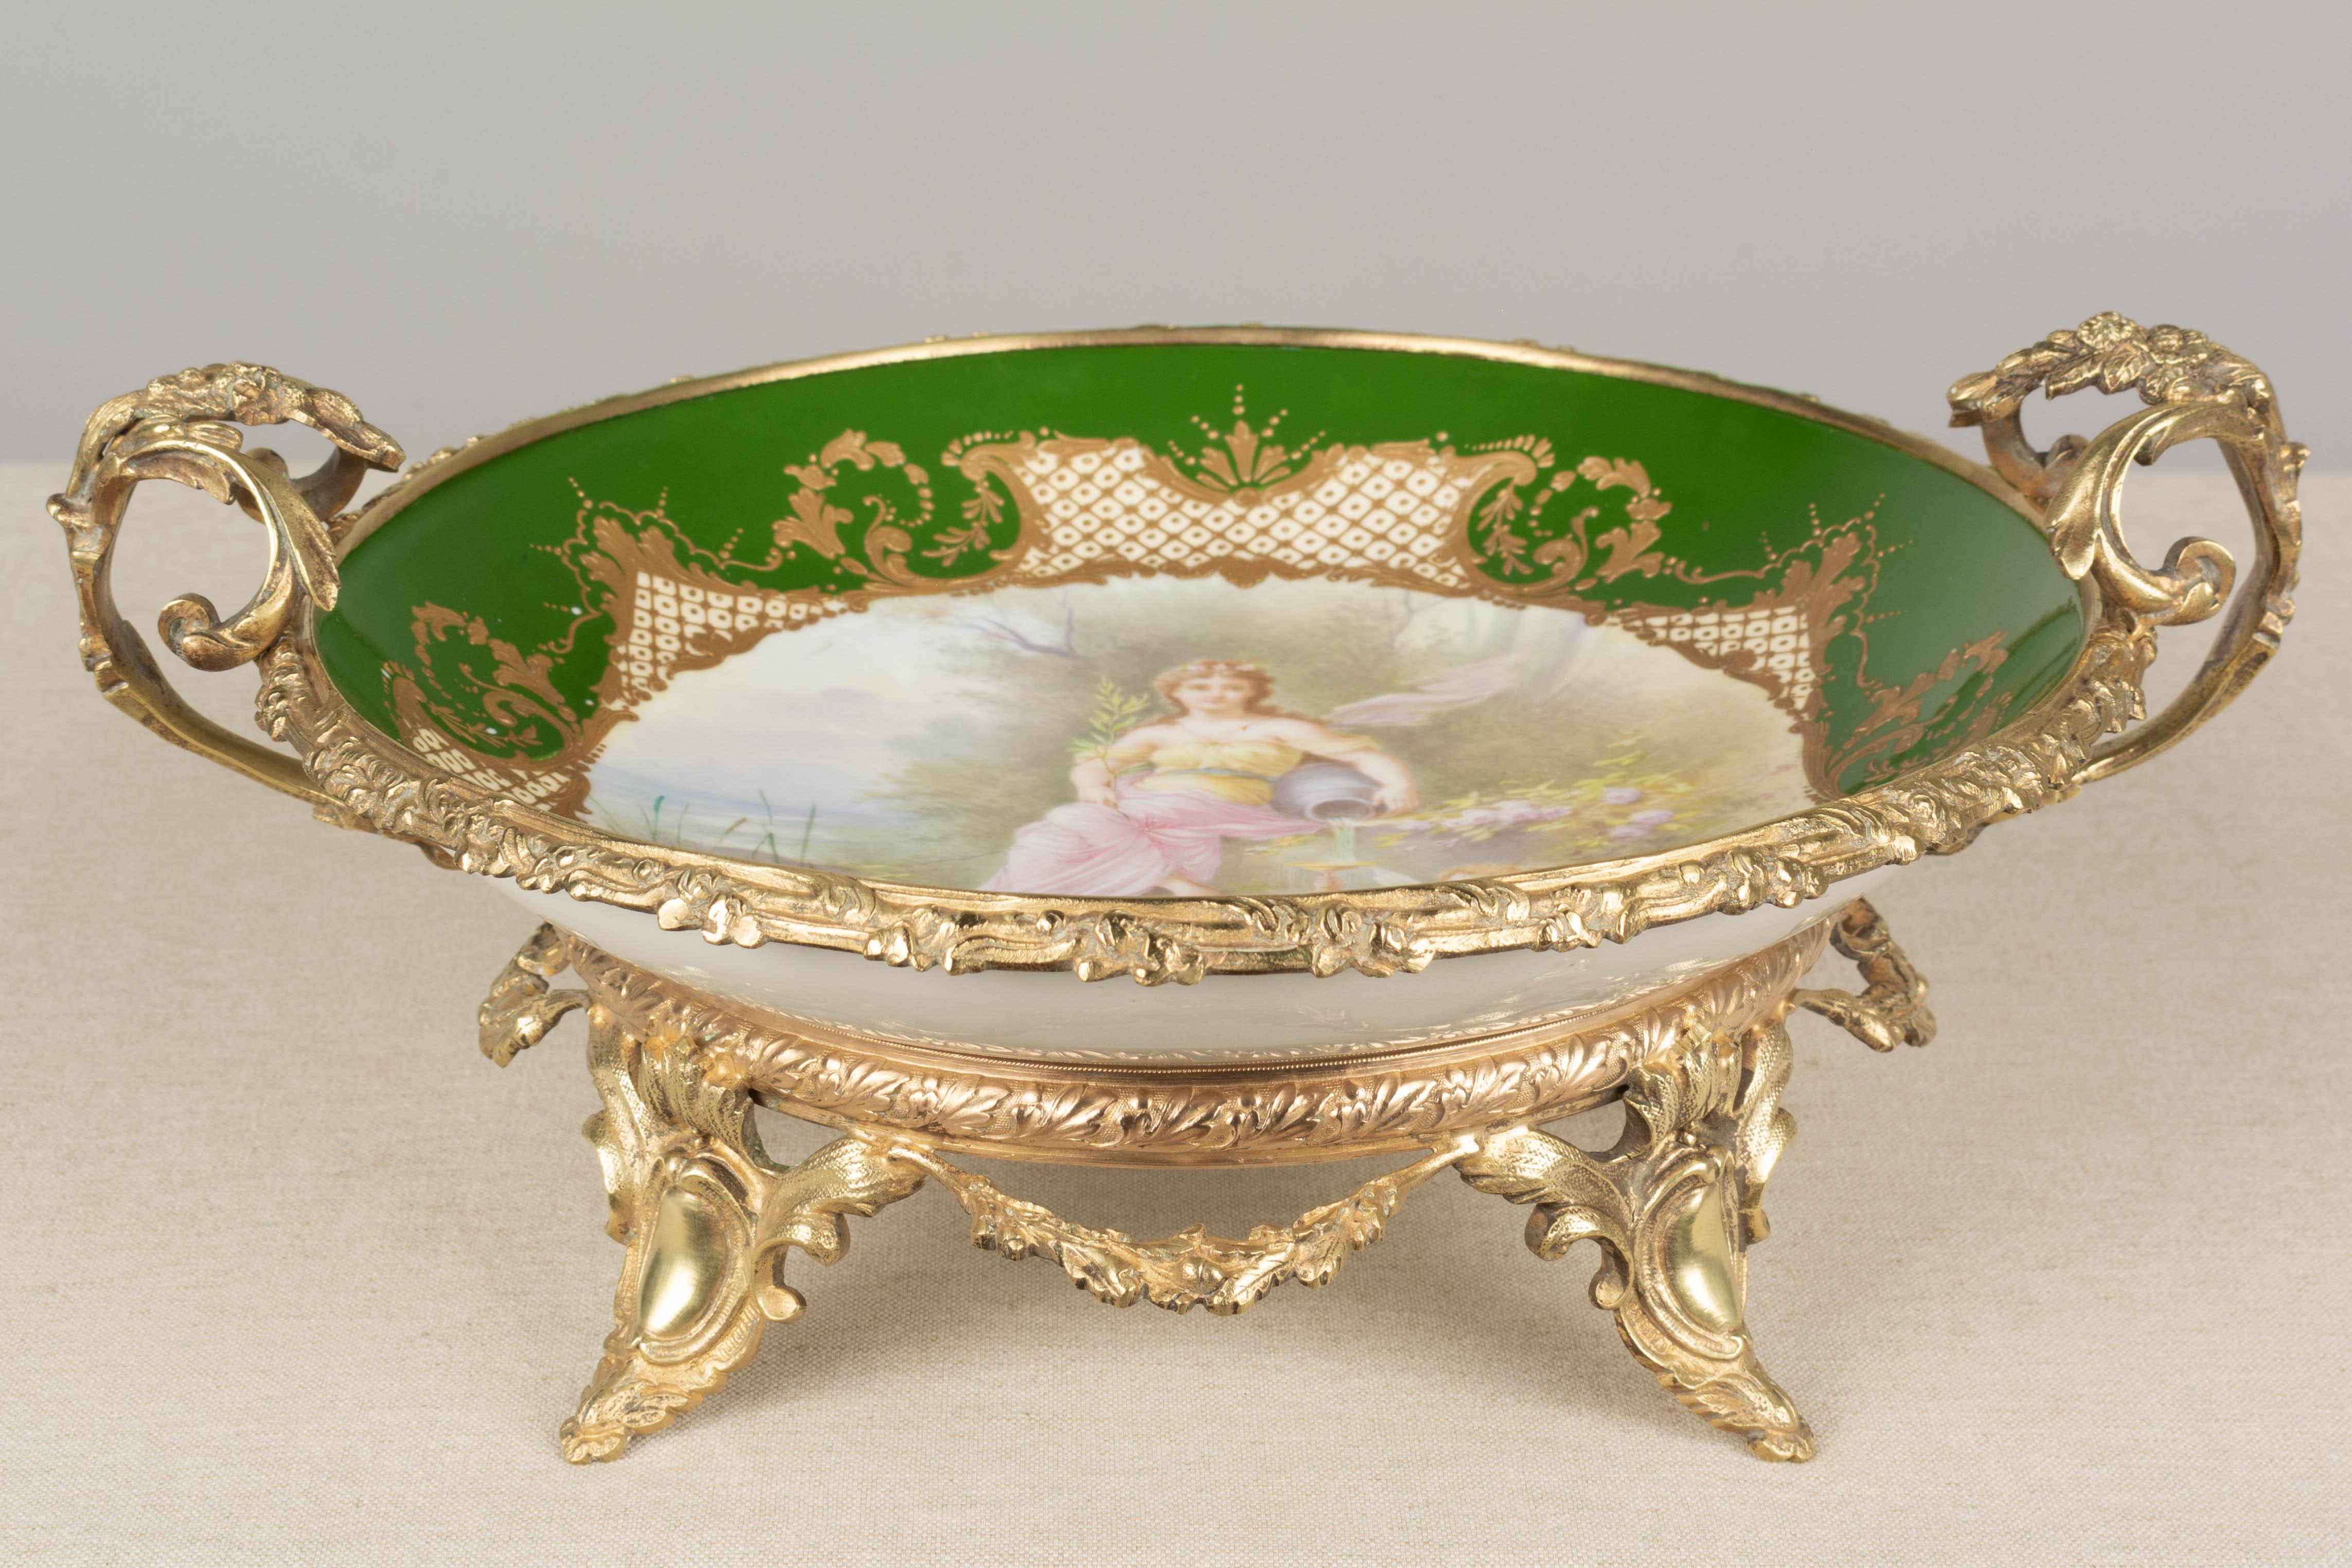 Centre de table en porcelaine de Sèvres du XIXe siècle, monté en bronze doré, avec deux poignées et reposant sur une base à pieds. Coupe creuse en porcelaine de style néoclassique peinte à la main et signée A. Collot, avec une composition rococo